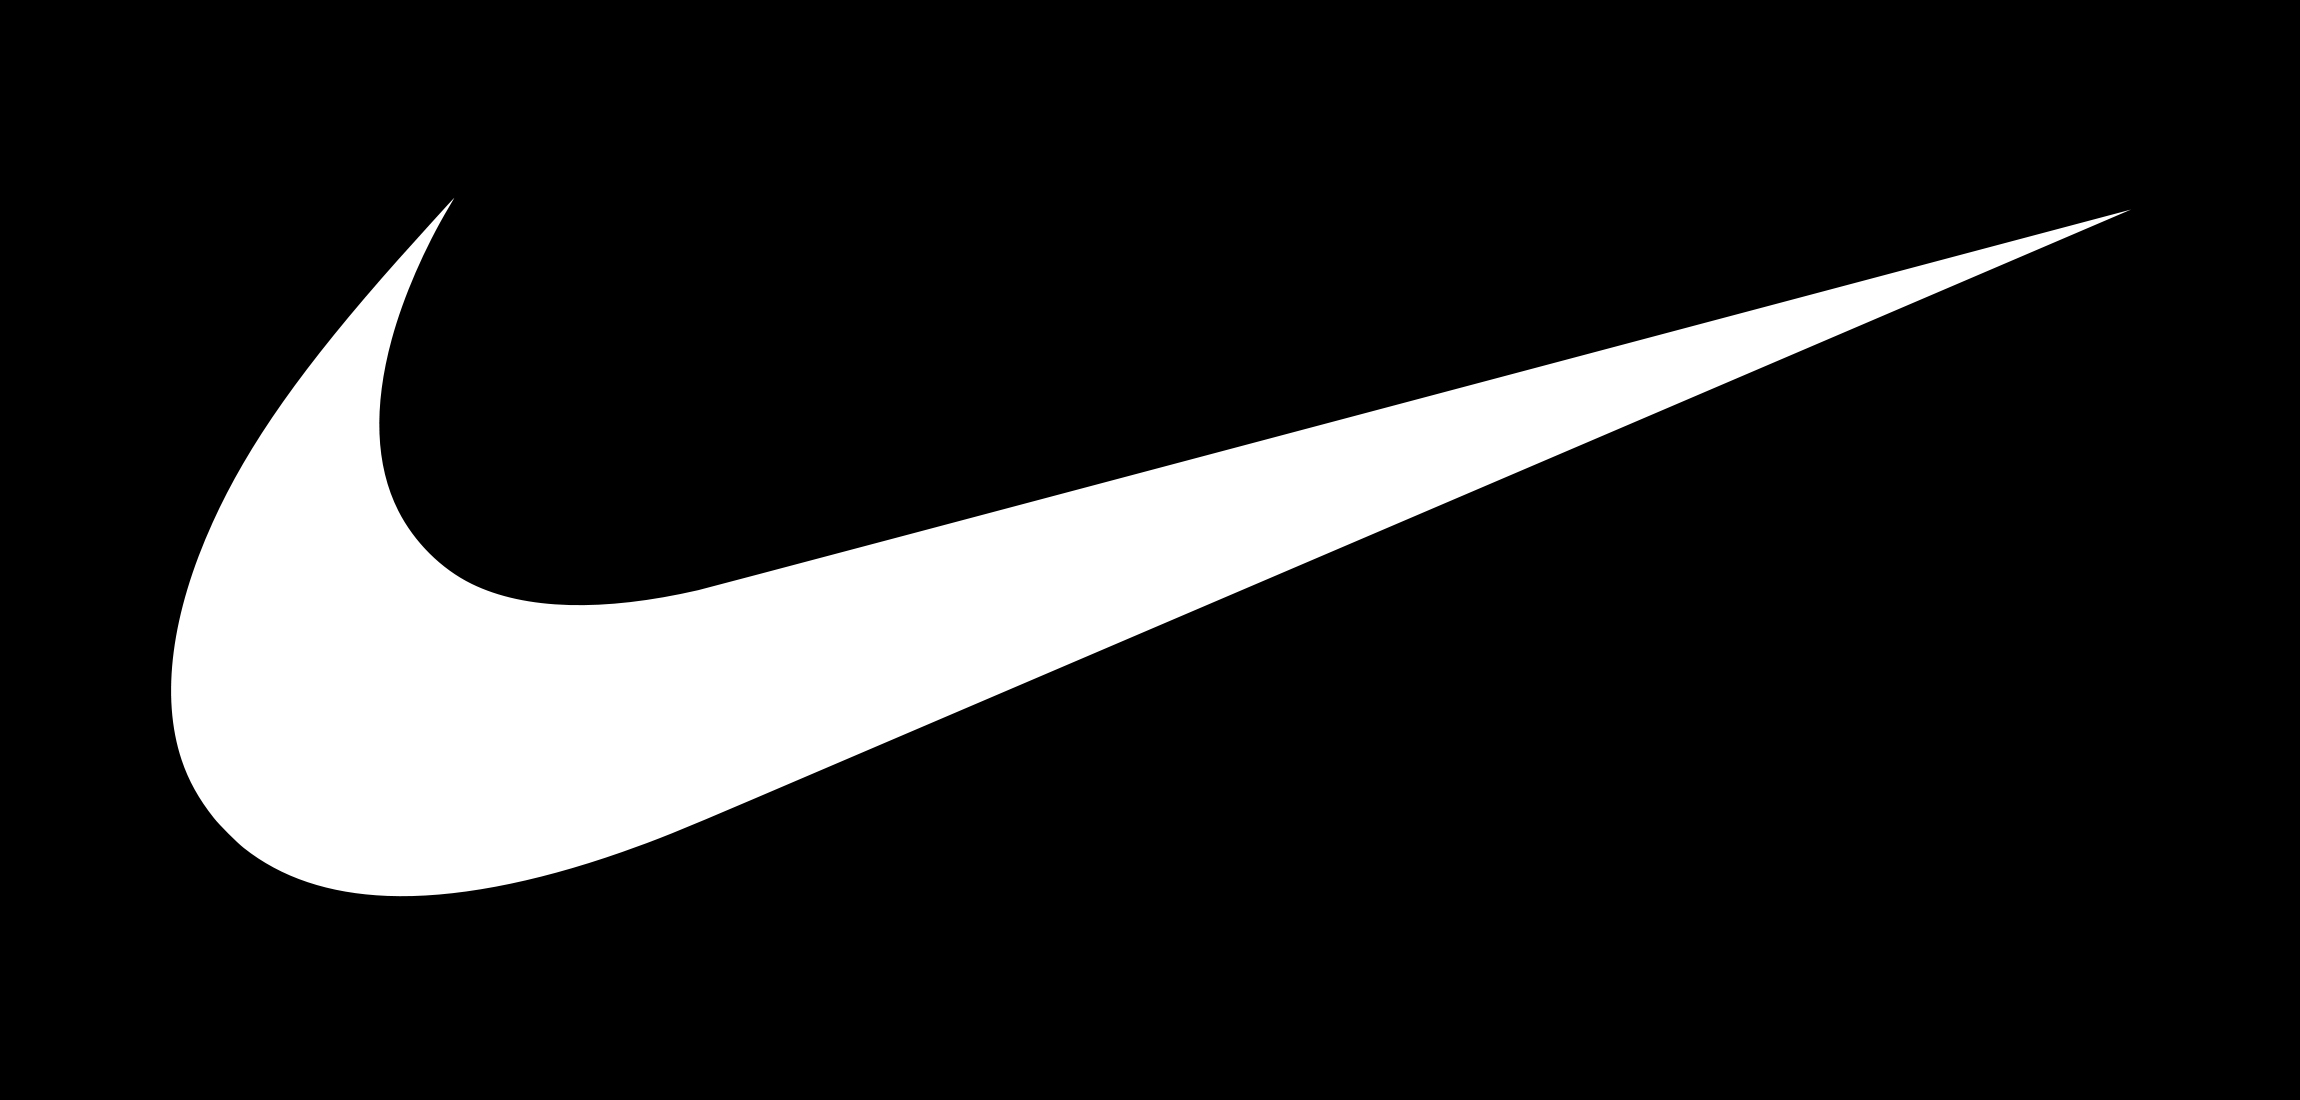 ფაილი:Logotipo Nike.jpg - ვიკიპედია